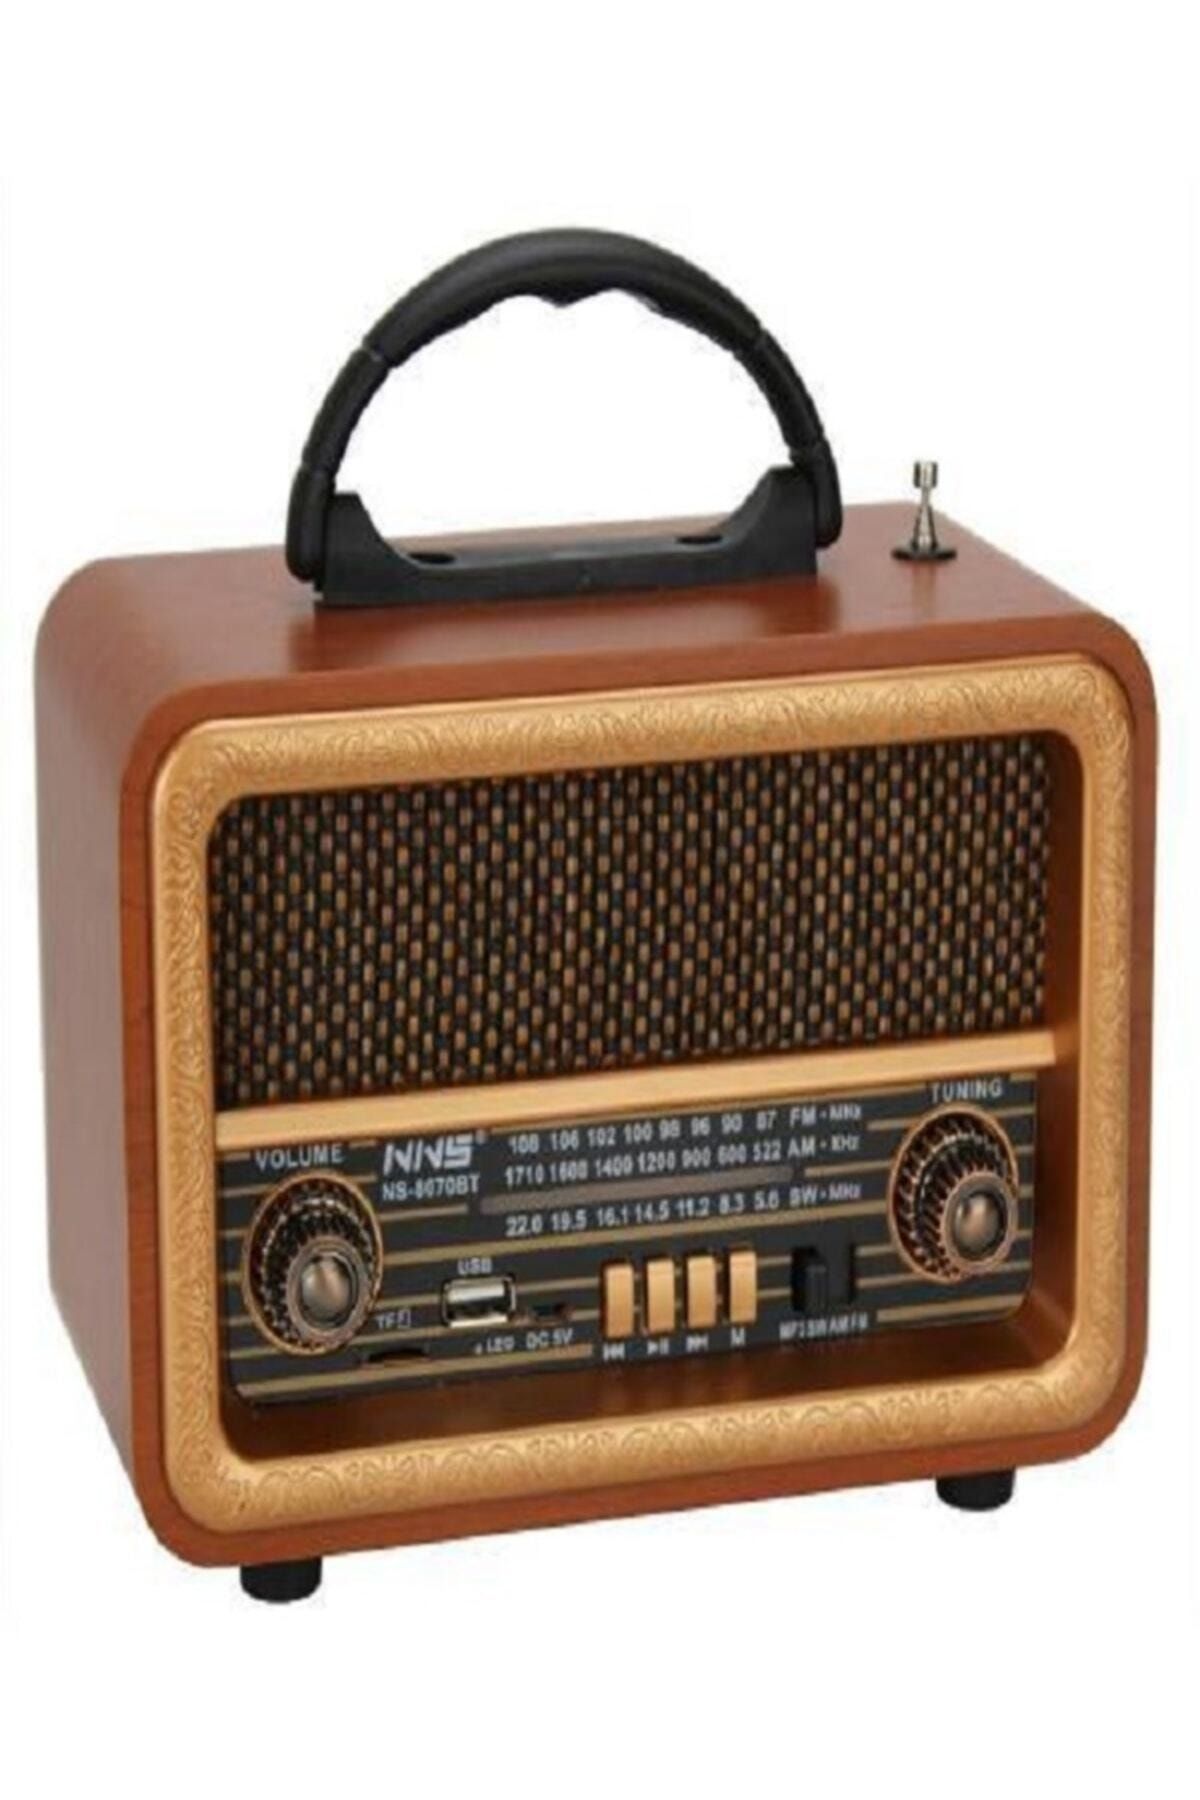 VOLEMİ Nostaji Şarjlı Radio Fiyatı, Yorumları - Trendyol